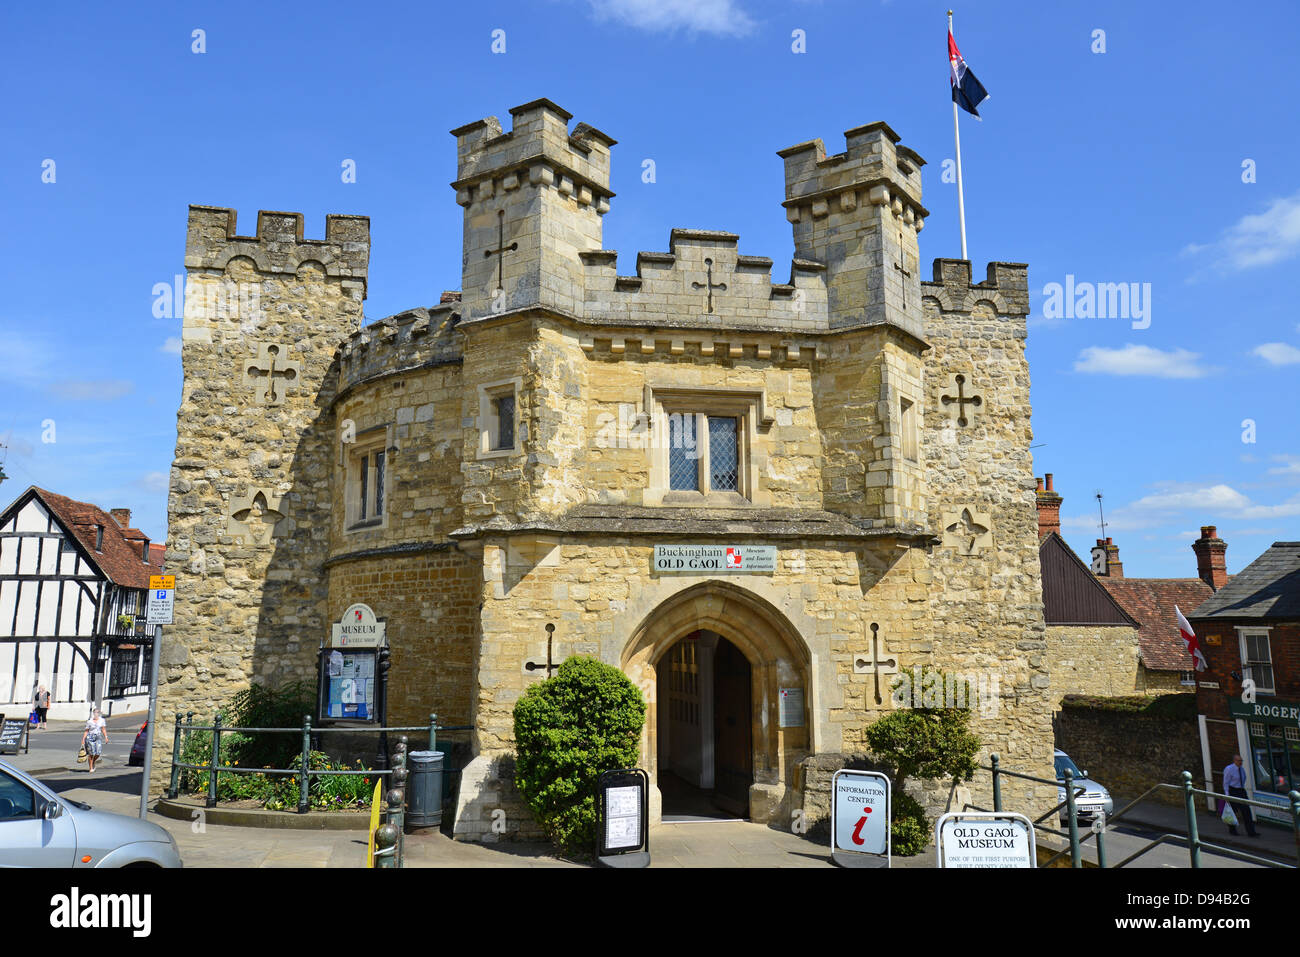 Vieille prison de comté Musée, Market Hill, Buckingham, Buckinghamshire, Angleterre, Royaume-Uni Banque D'Images